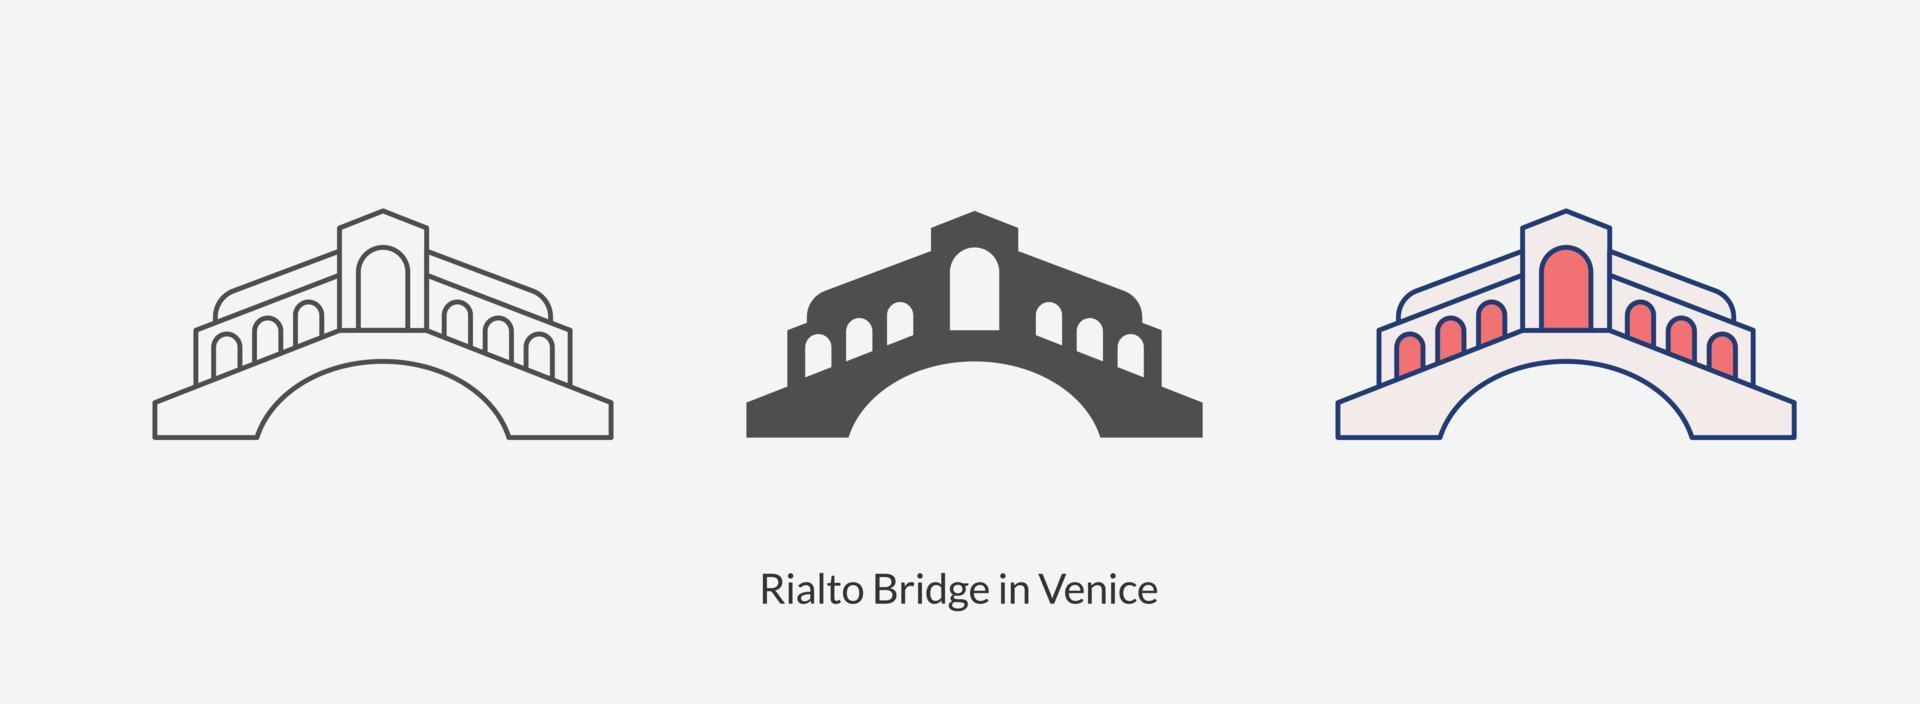 Rialtobrug in Venetië pictogram in verschillende stijl vectorillustratie. vector